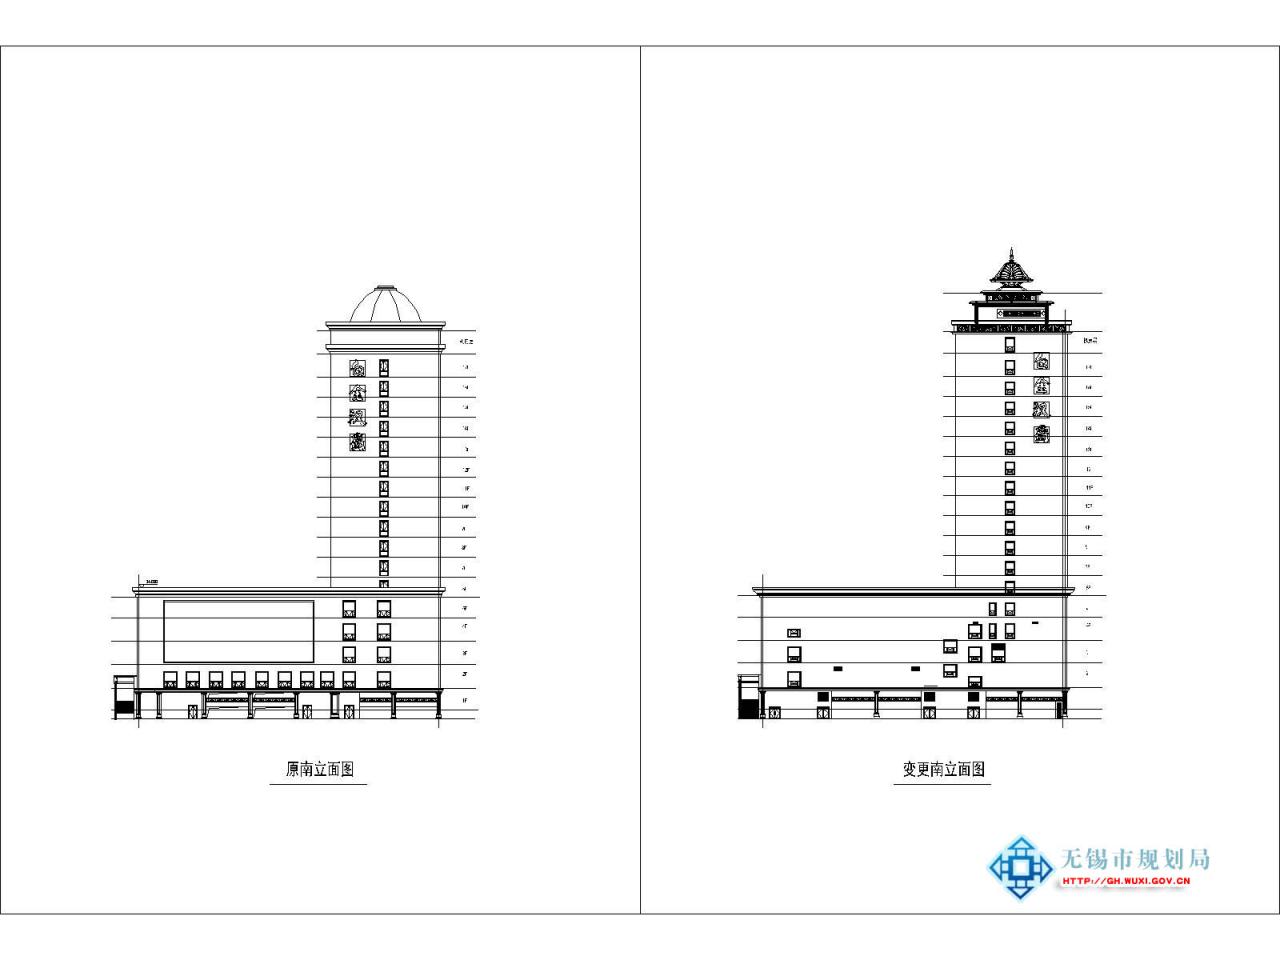 无锡白金汉爵大酒店二期项目规划设计变更公示